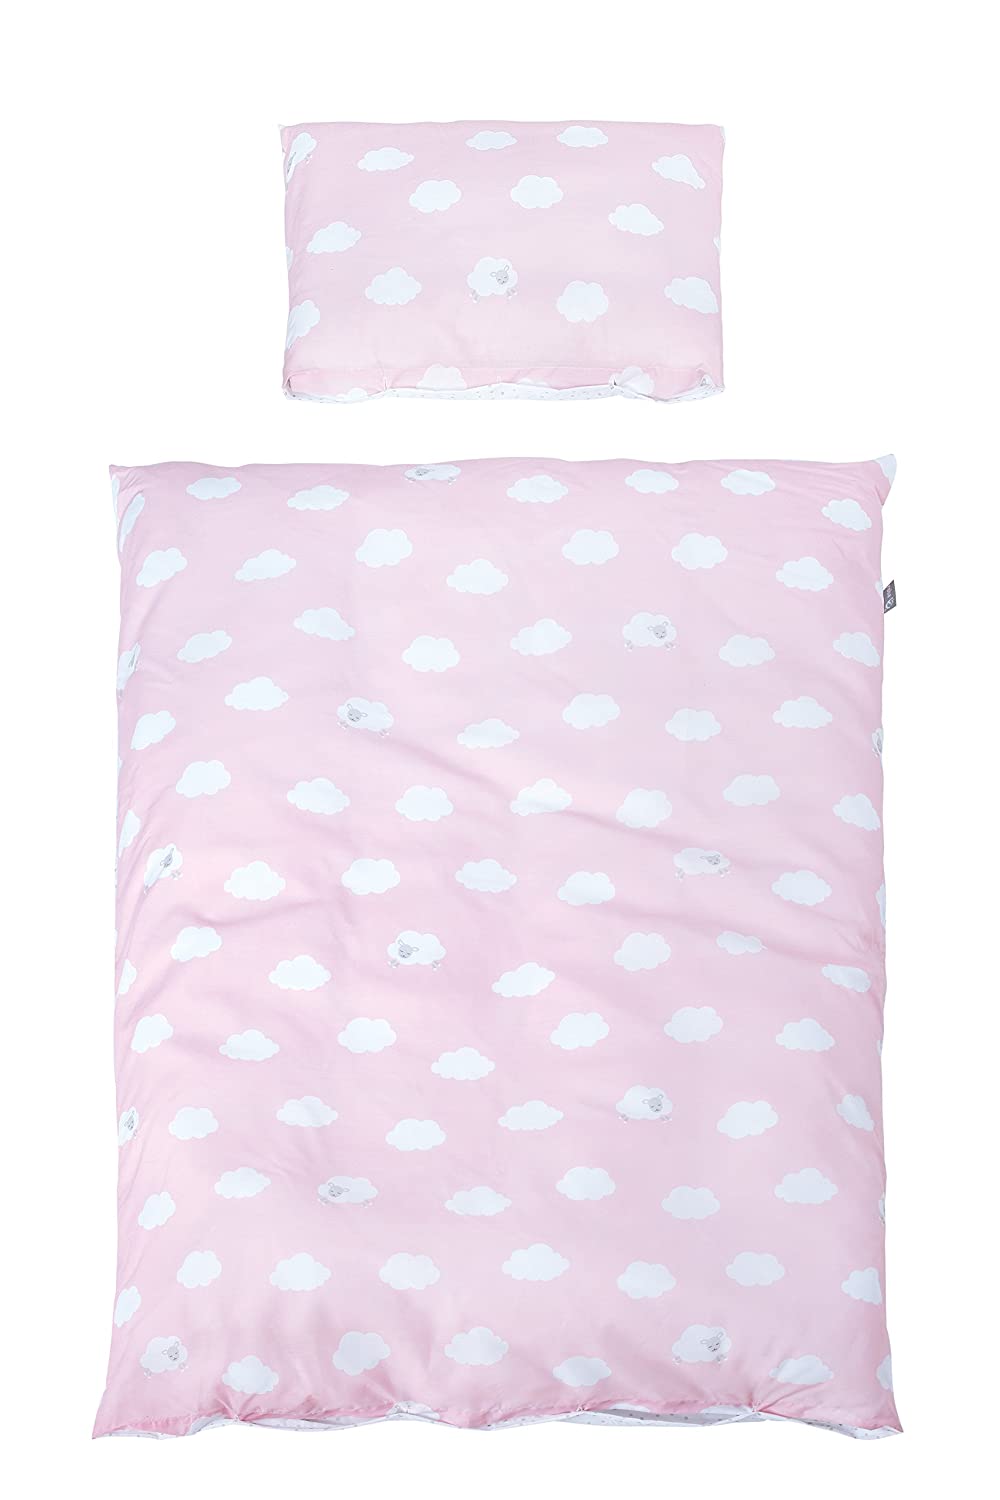 Roba Bed Linen 2-Piece Set, Little Cloud Pink Collection, 100 X 135 Cm, 100